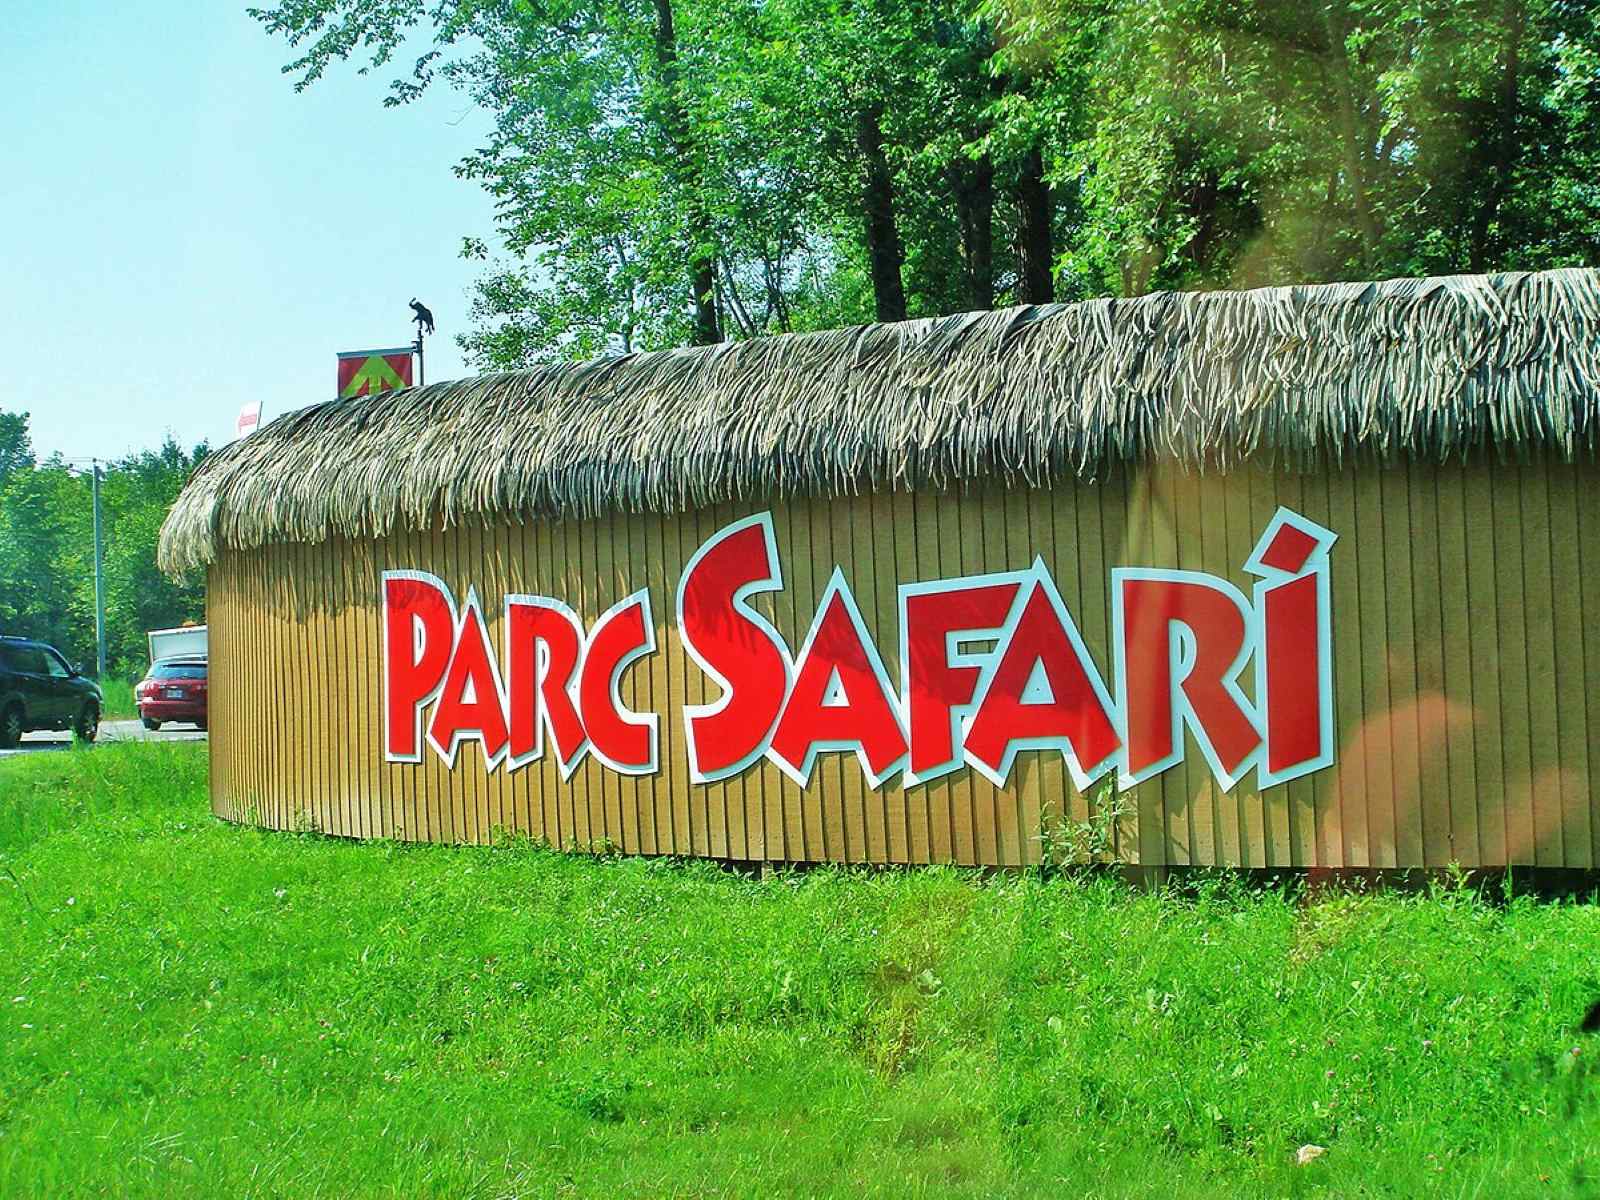 12-captivating-facts-about-parc-safari